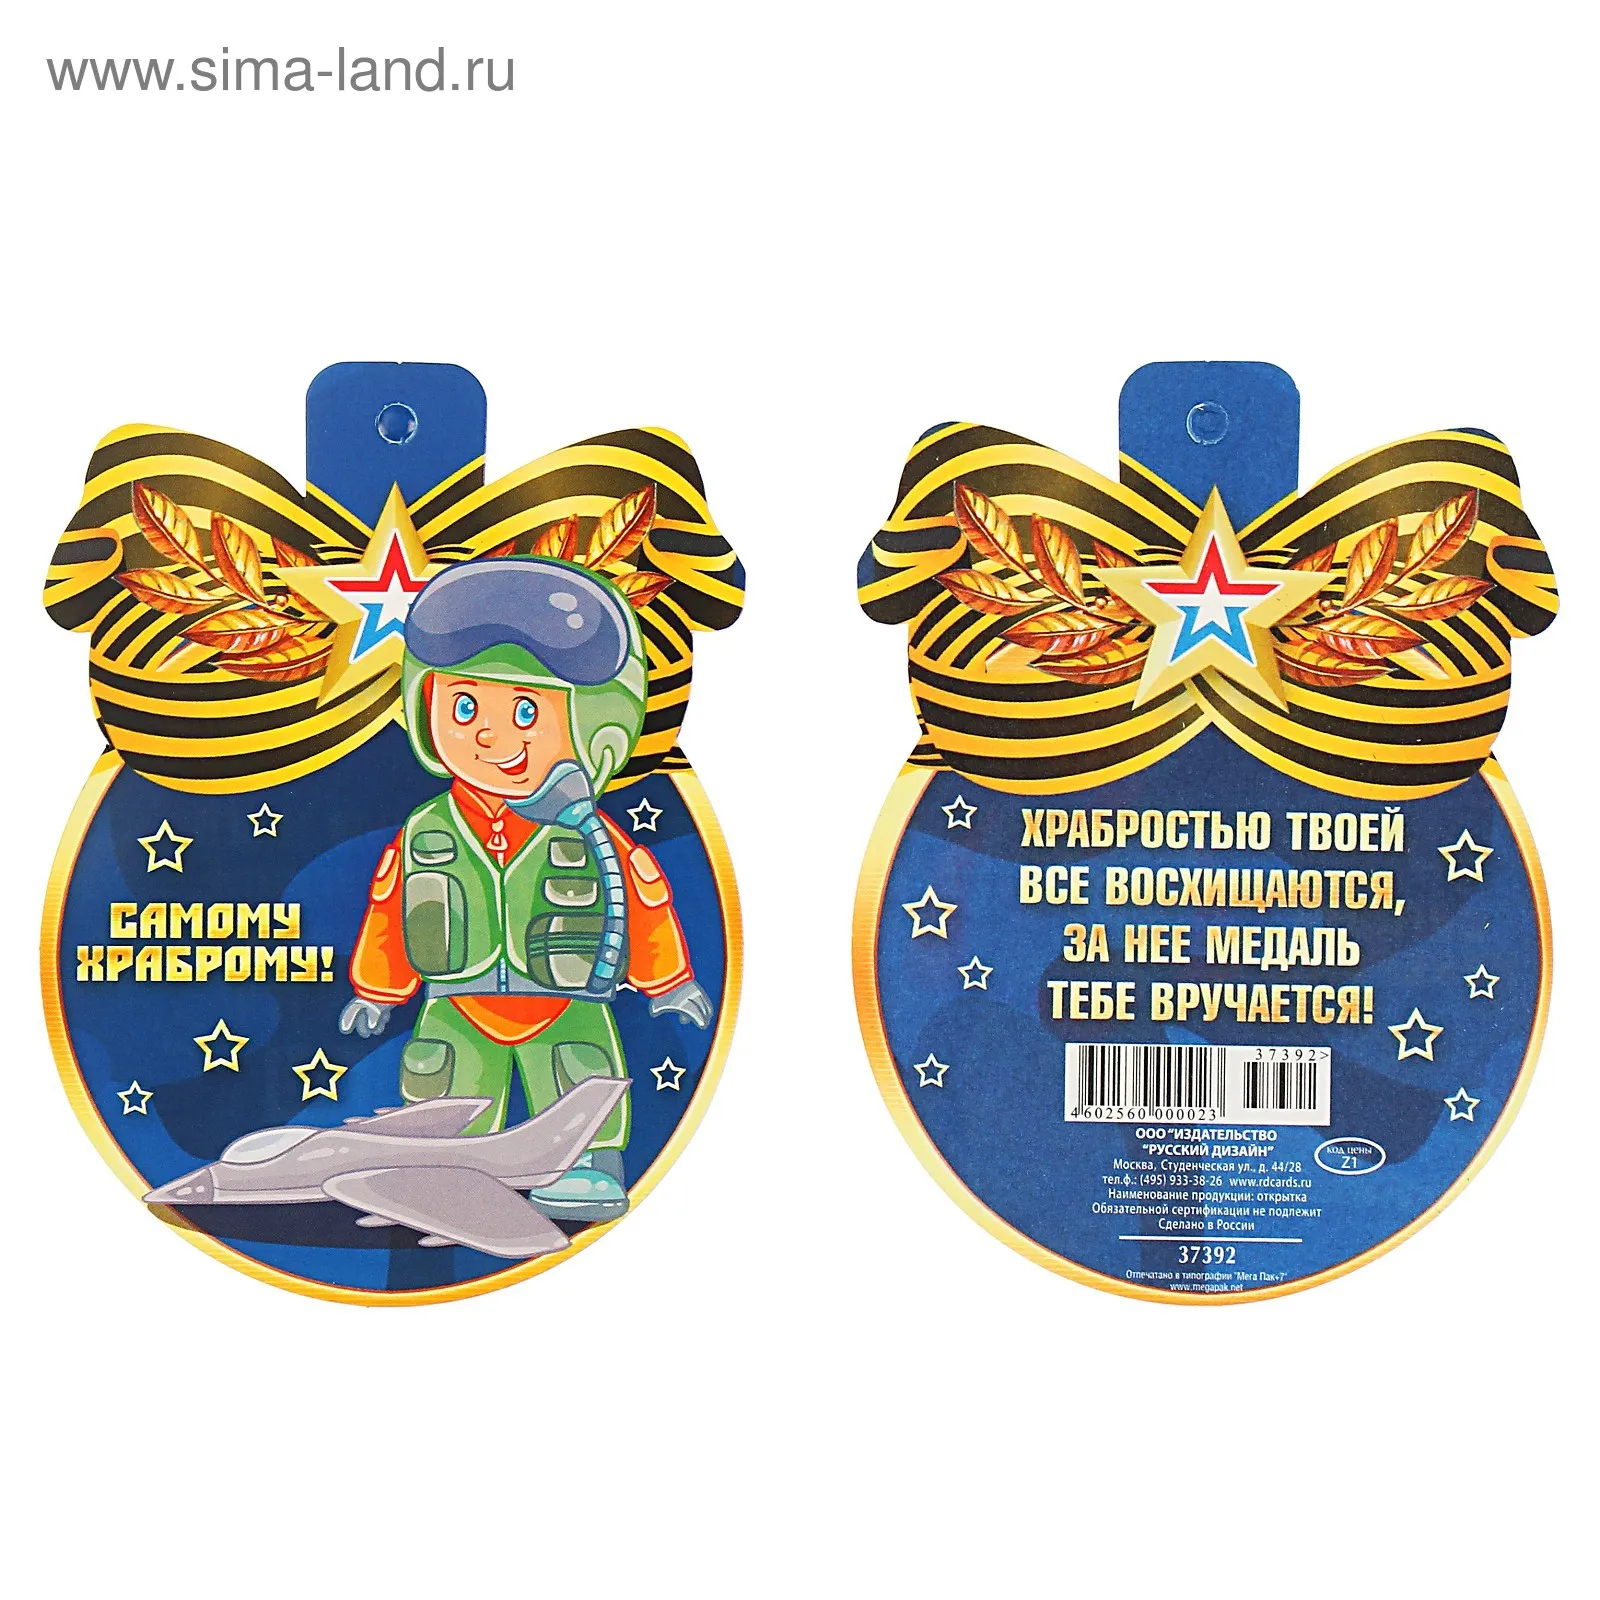 Медаль мать защитника отечества. Медали на 23 февраля мальчикам. Медали на 23 февраля самый. Медаль 23 февраля для детей. Картонная медаль 23 февраля.